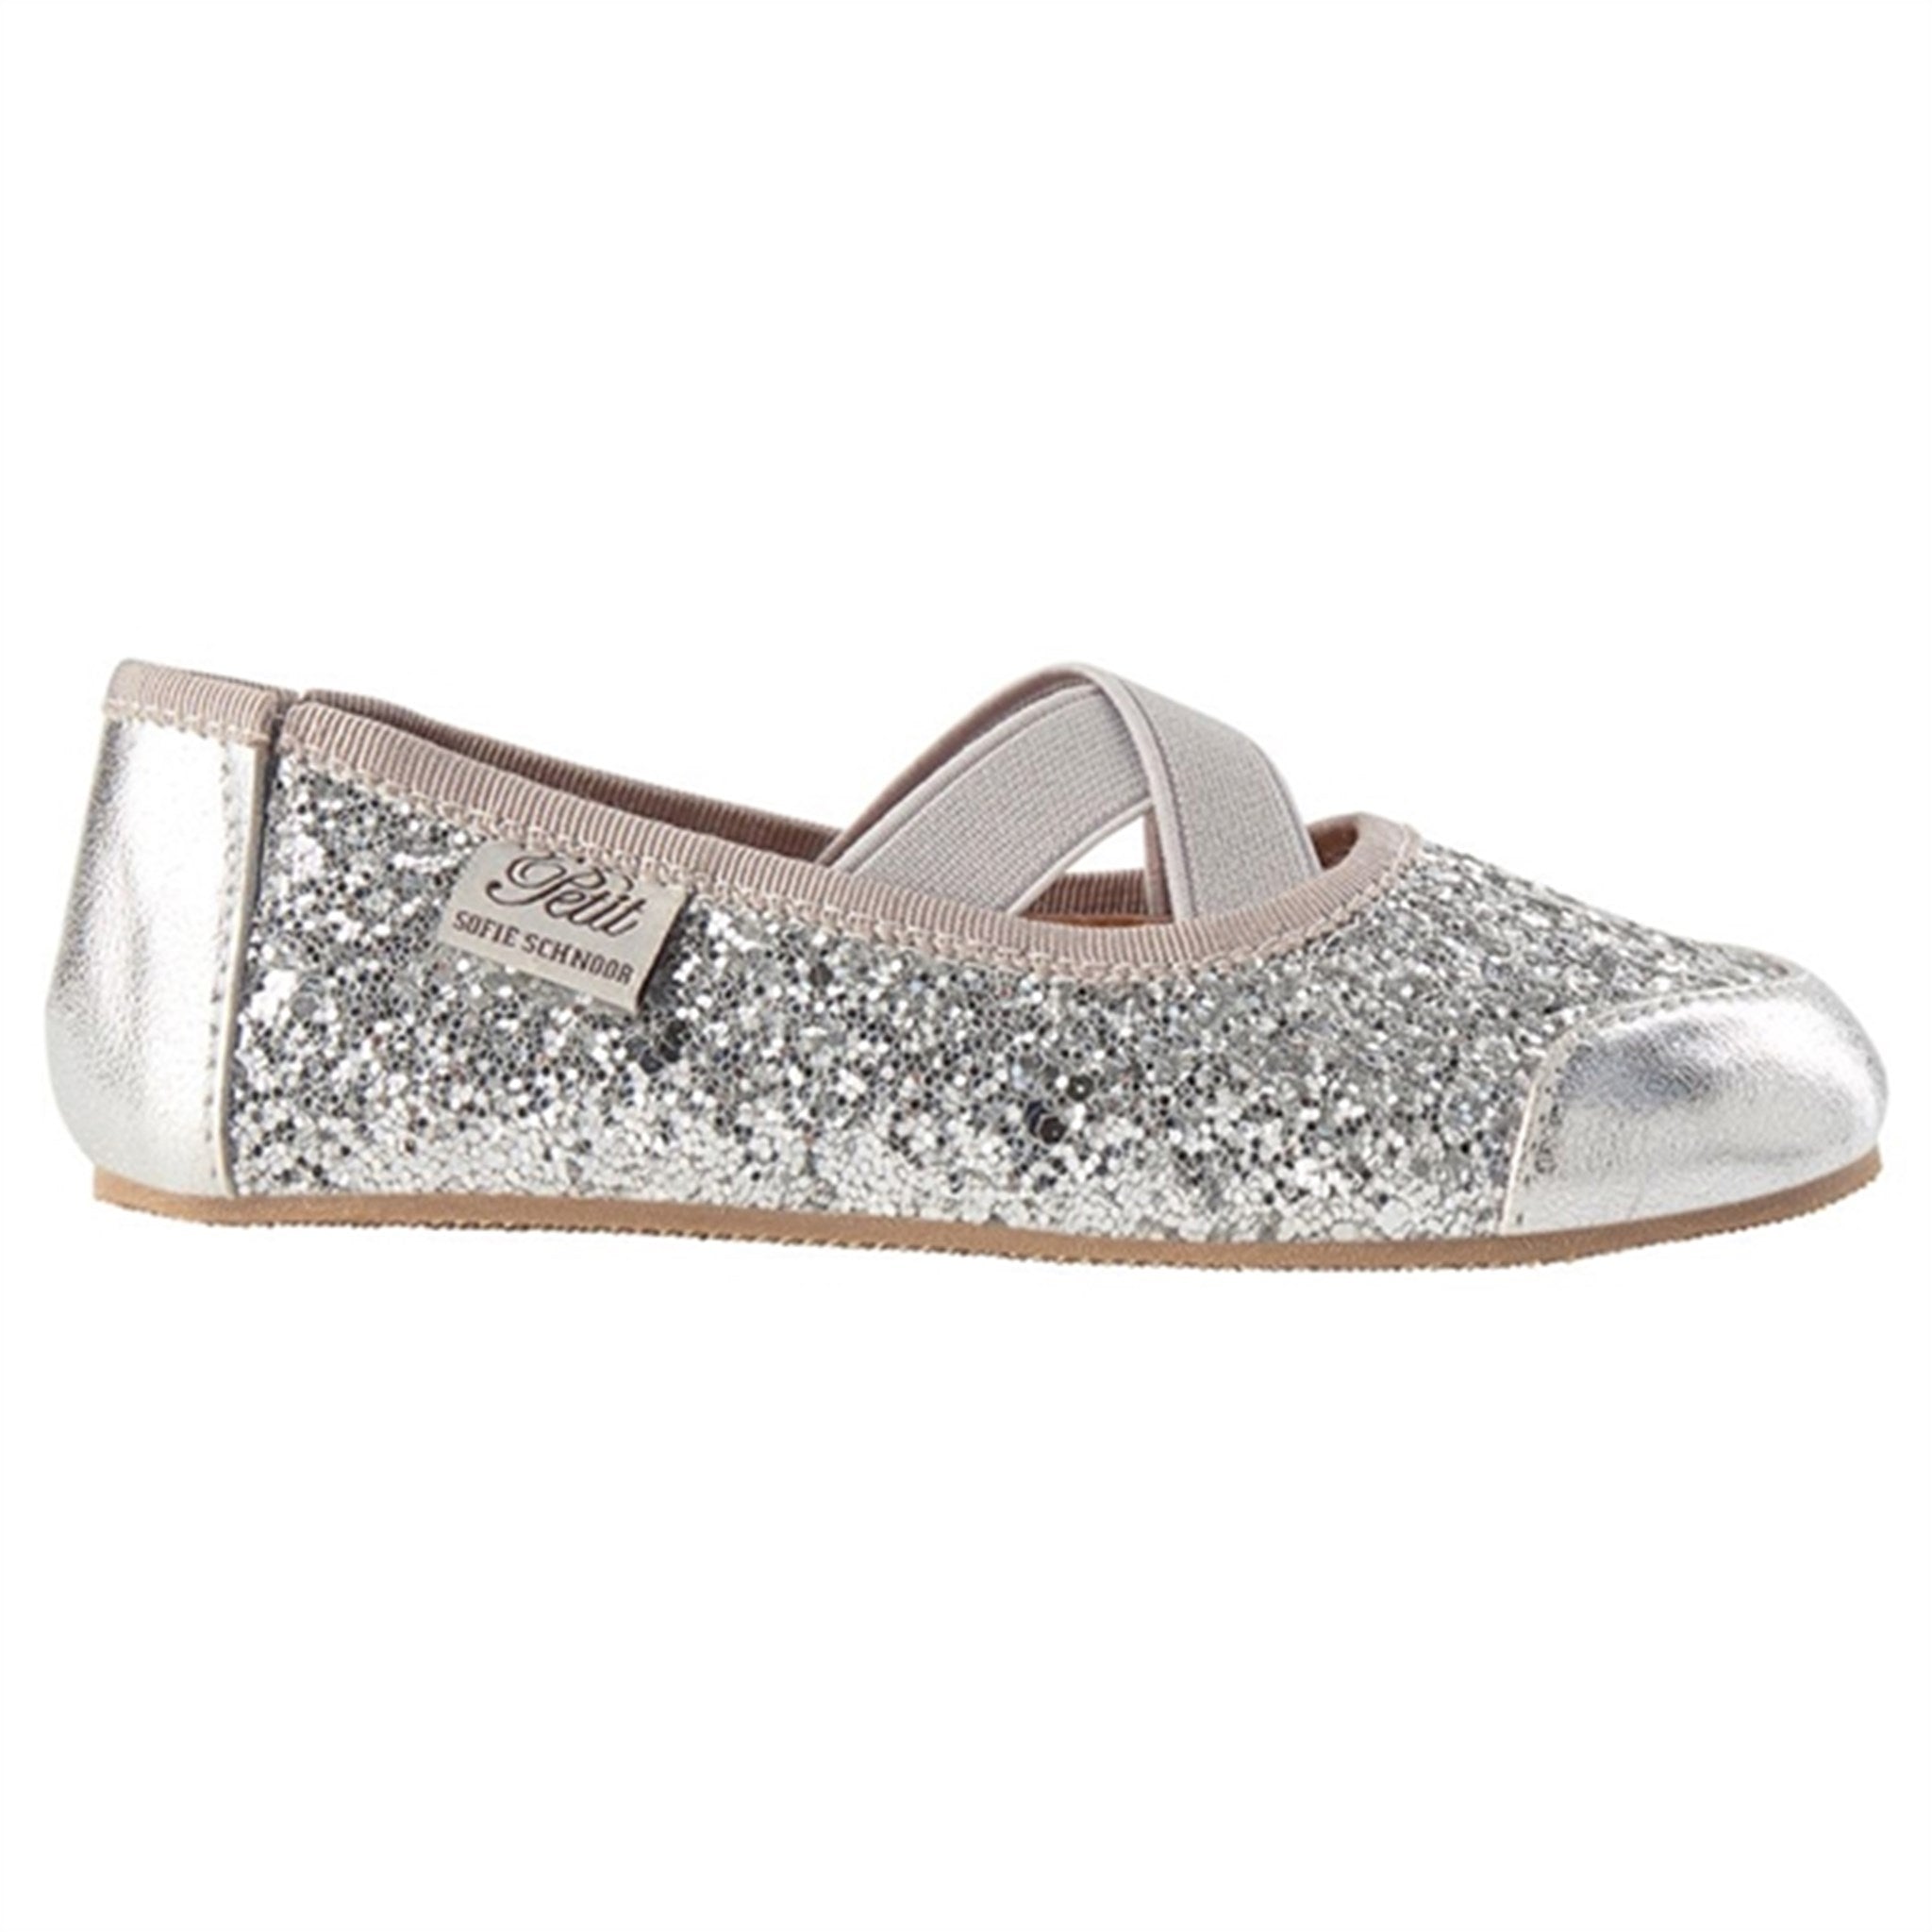 Sofie Schnoor Ballerina Indoors Shoes Silver 2